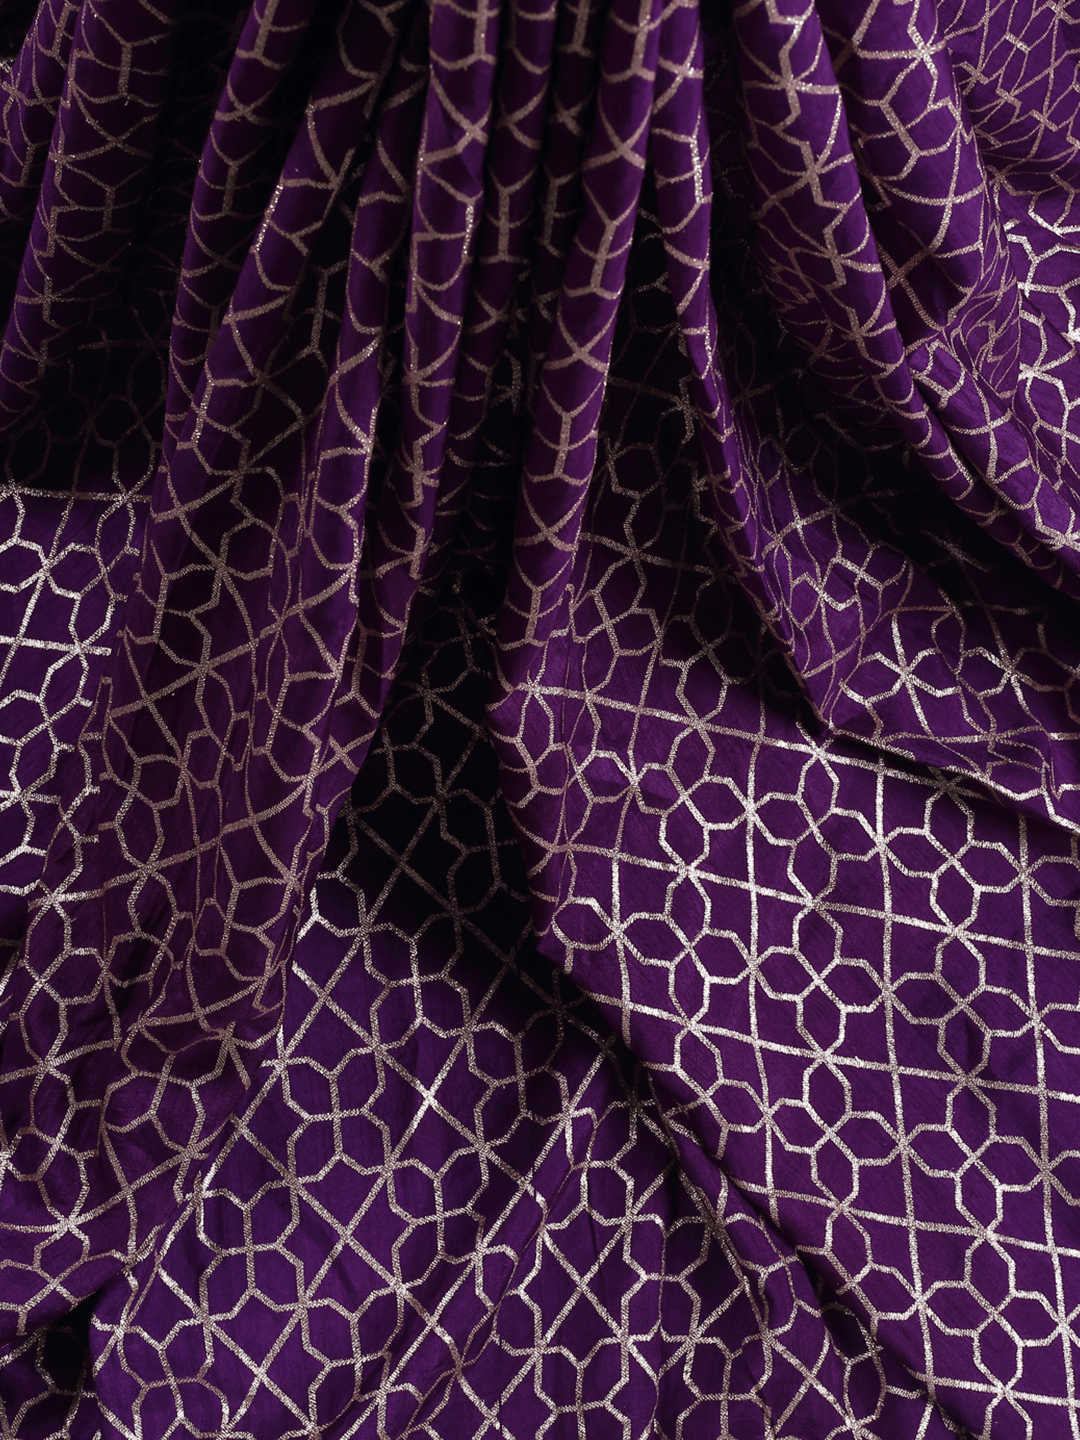 Purple Banarasi Dola Silk Brocade With Light Gold Water Zari